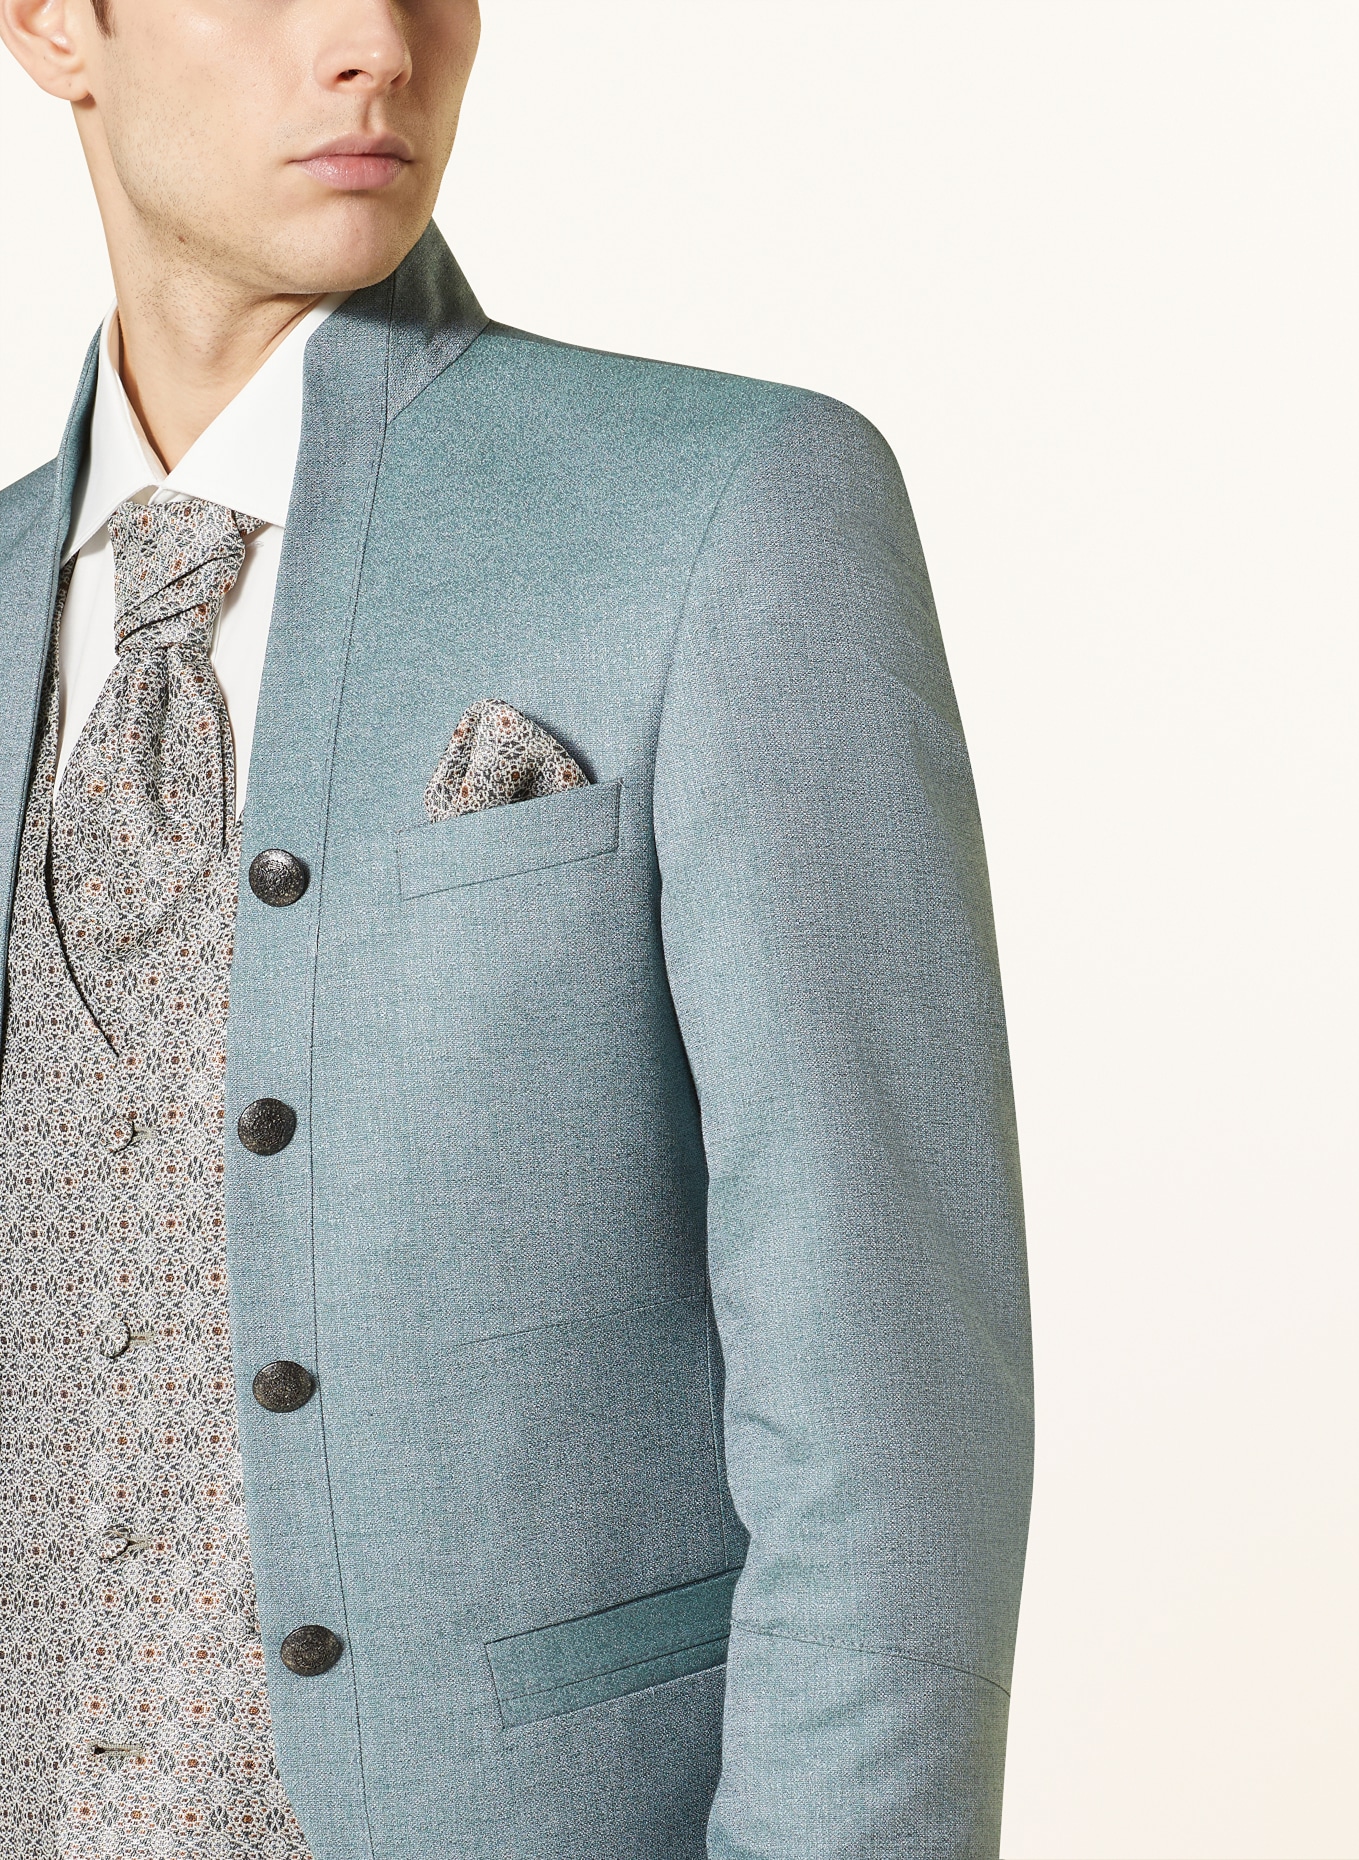 WILVORST Tailored jacket extra slim fit, Color: 045 grün (Image 5)